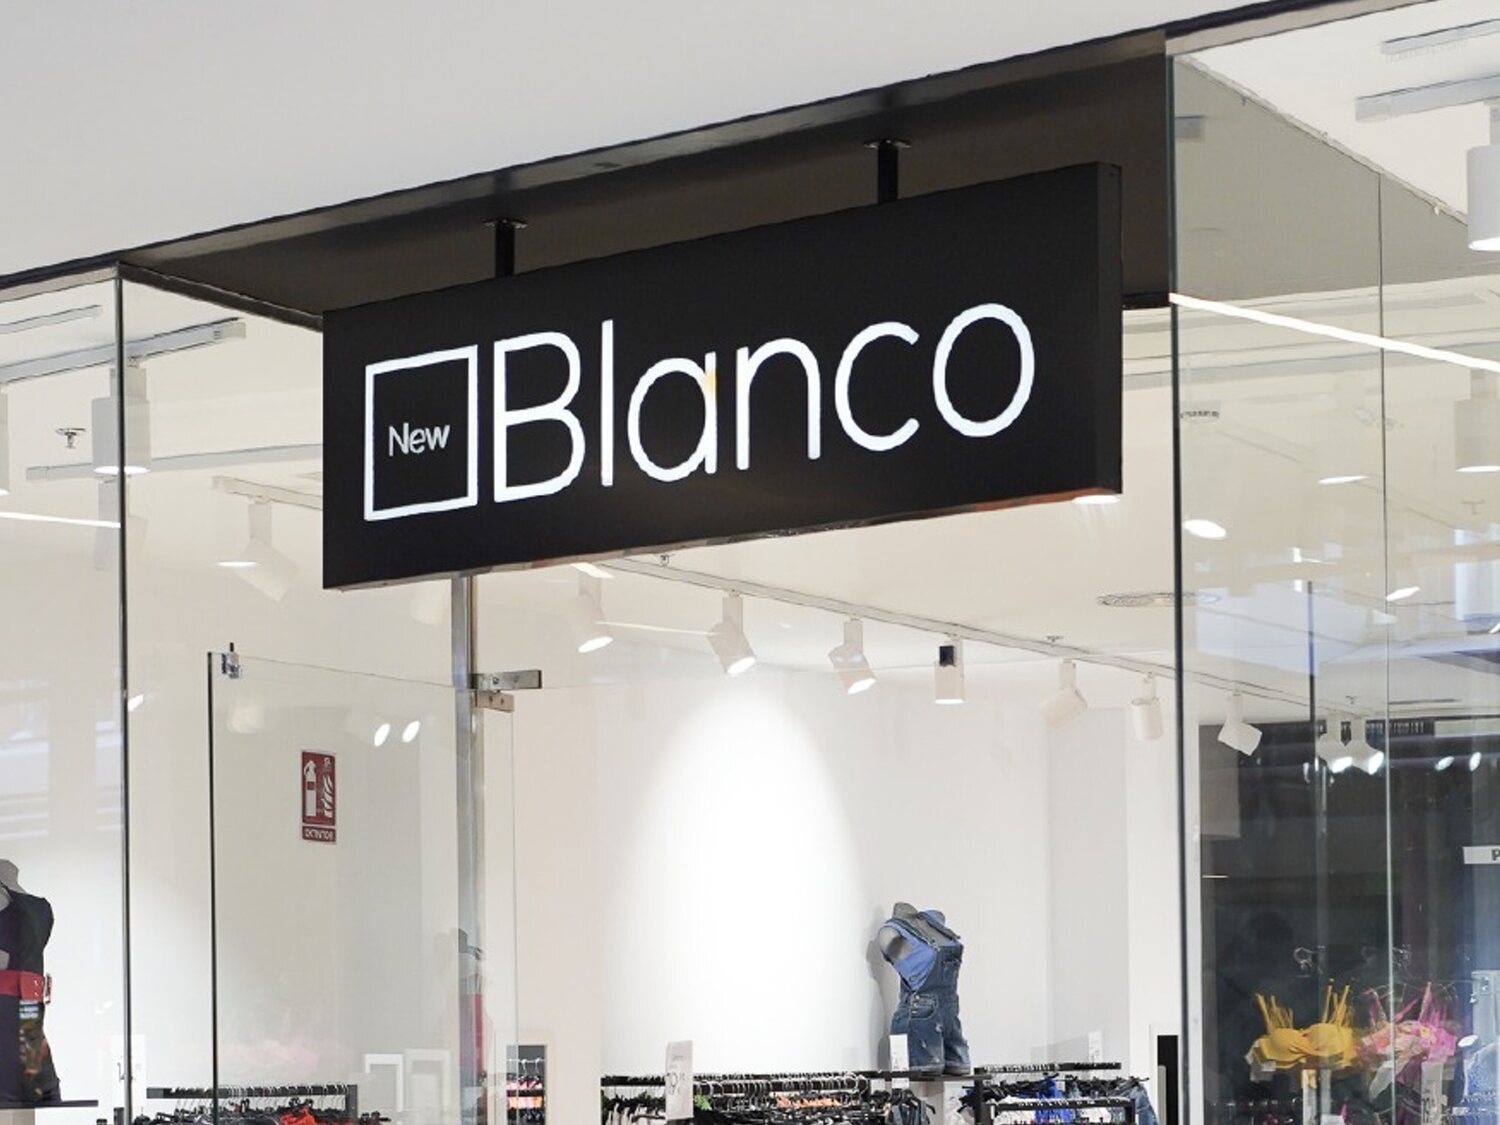 New Blanco, heredera de la cadena Blanco, cierra todas sus tiendas en España